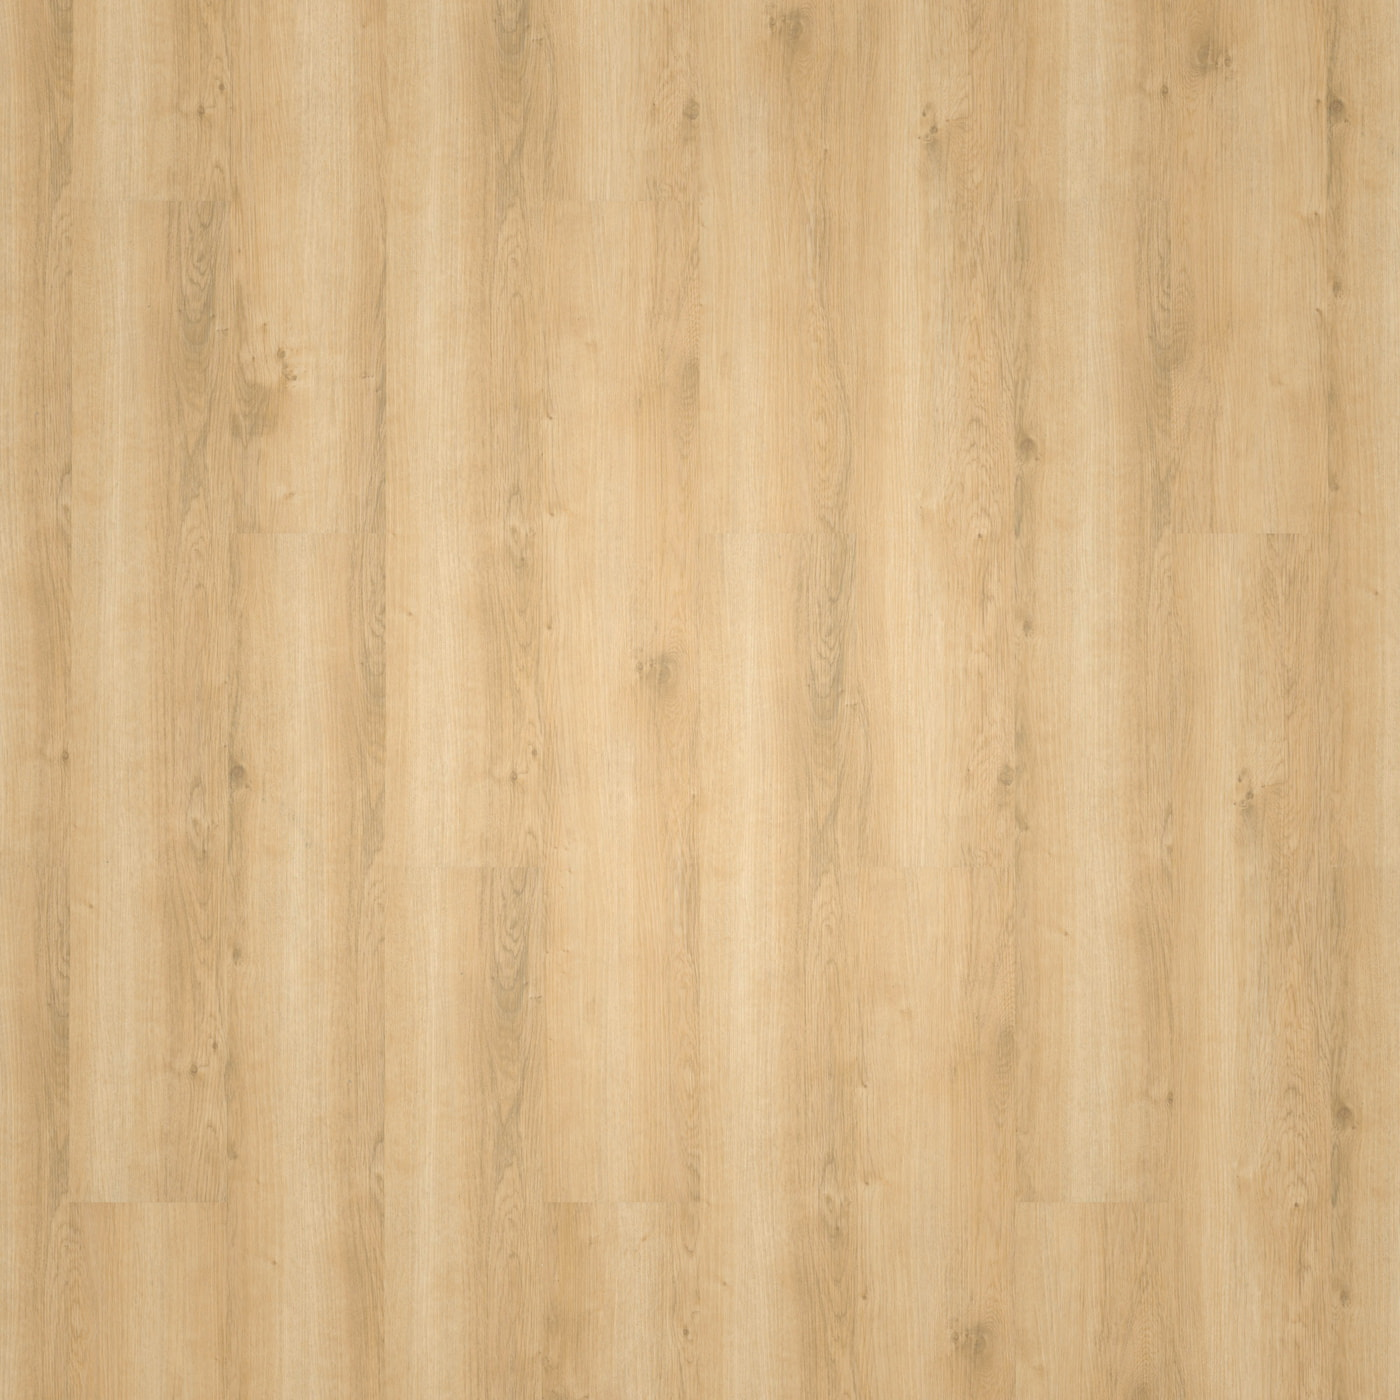 wineo Klick-Vinyl wineo 800 wood Wheat Golden Oak Exklusive Holzstruktur